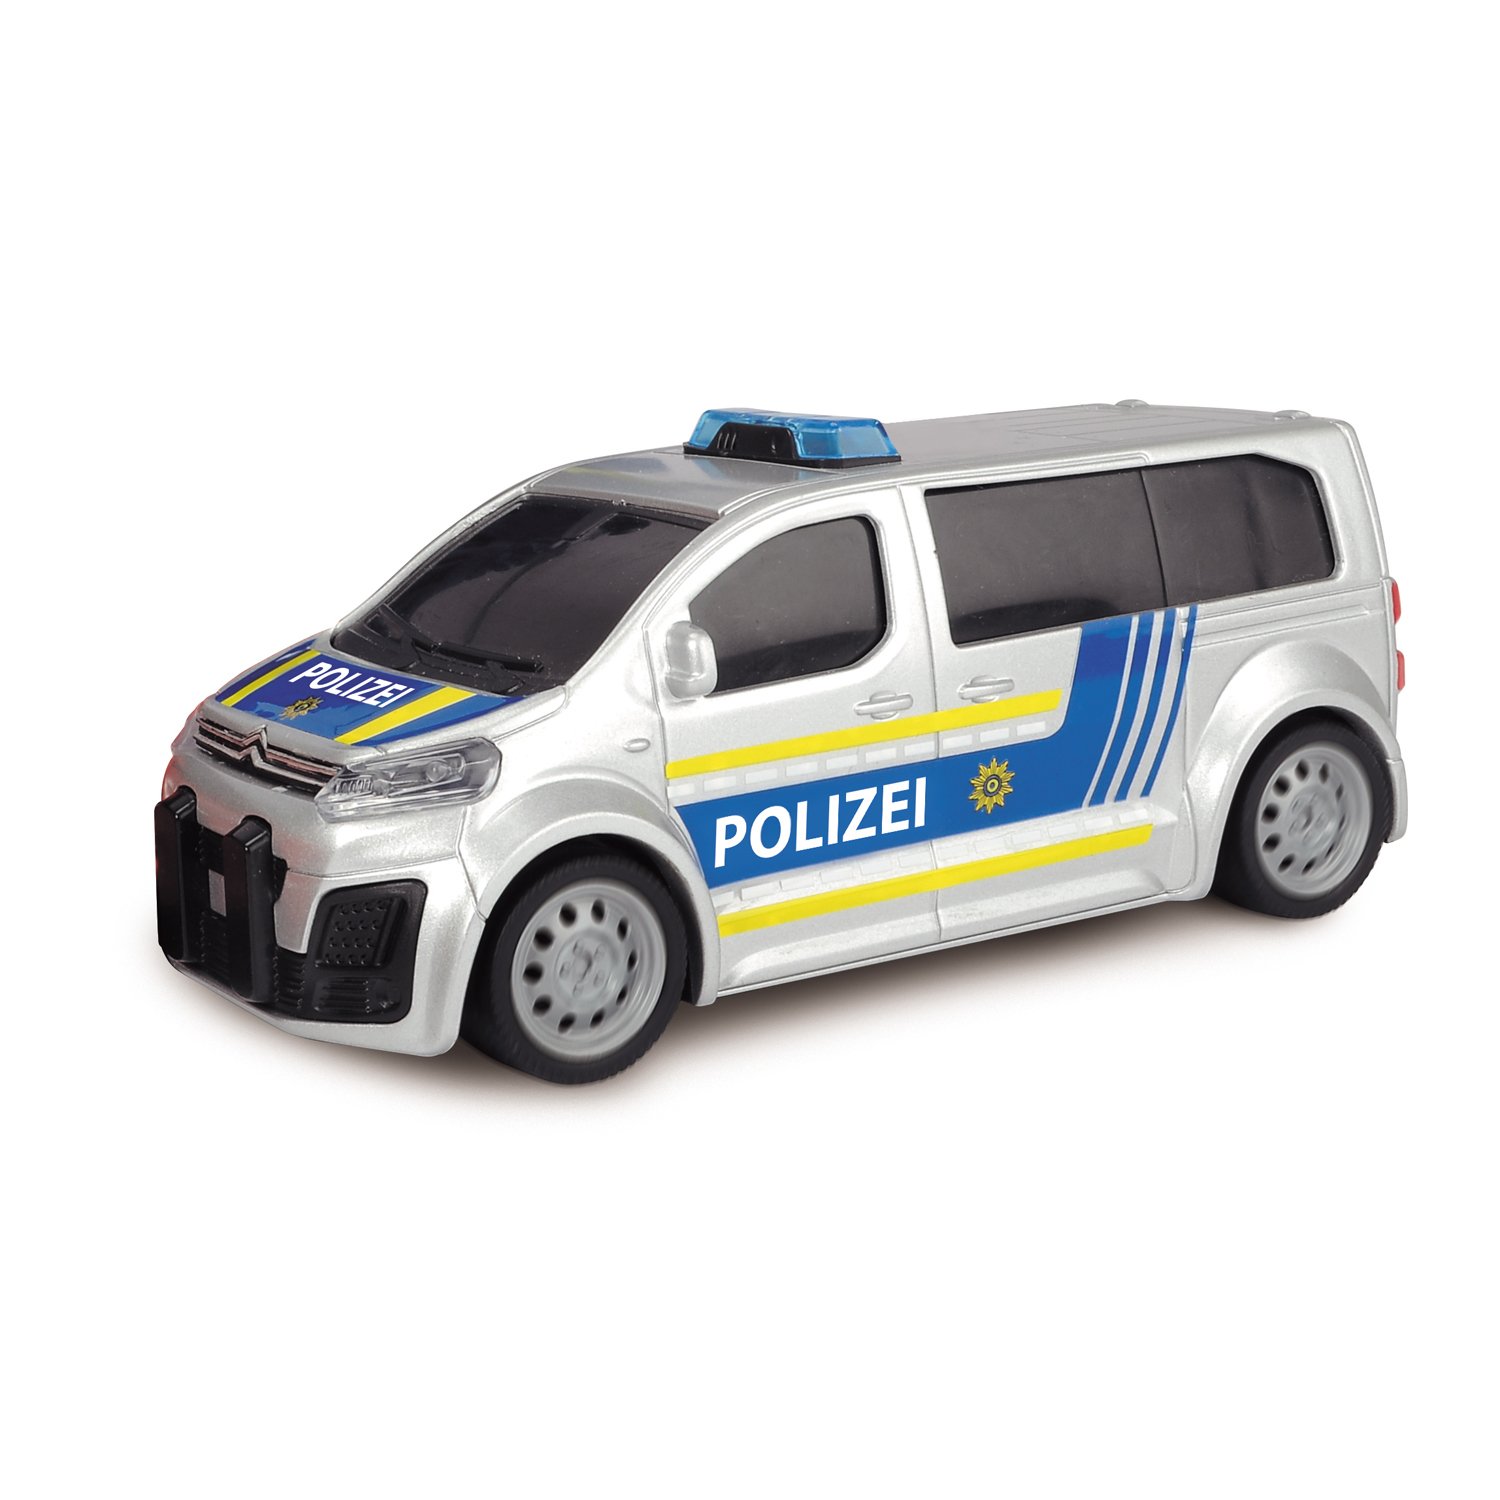 Полицейская станция с 2 машинками Porsche и Citroën, свет, звук, свободный ход  